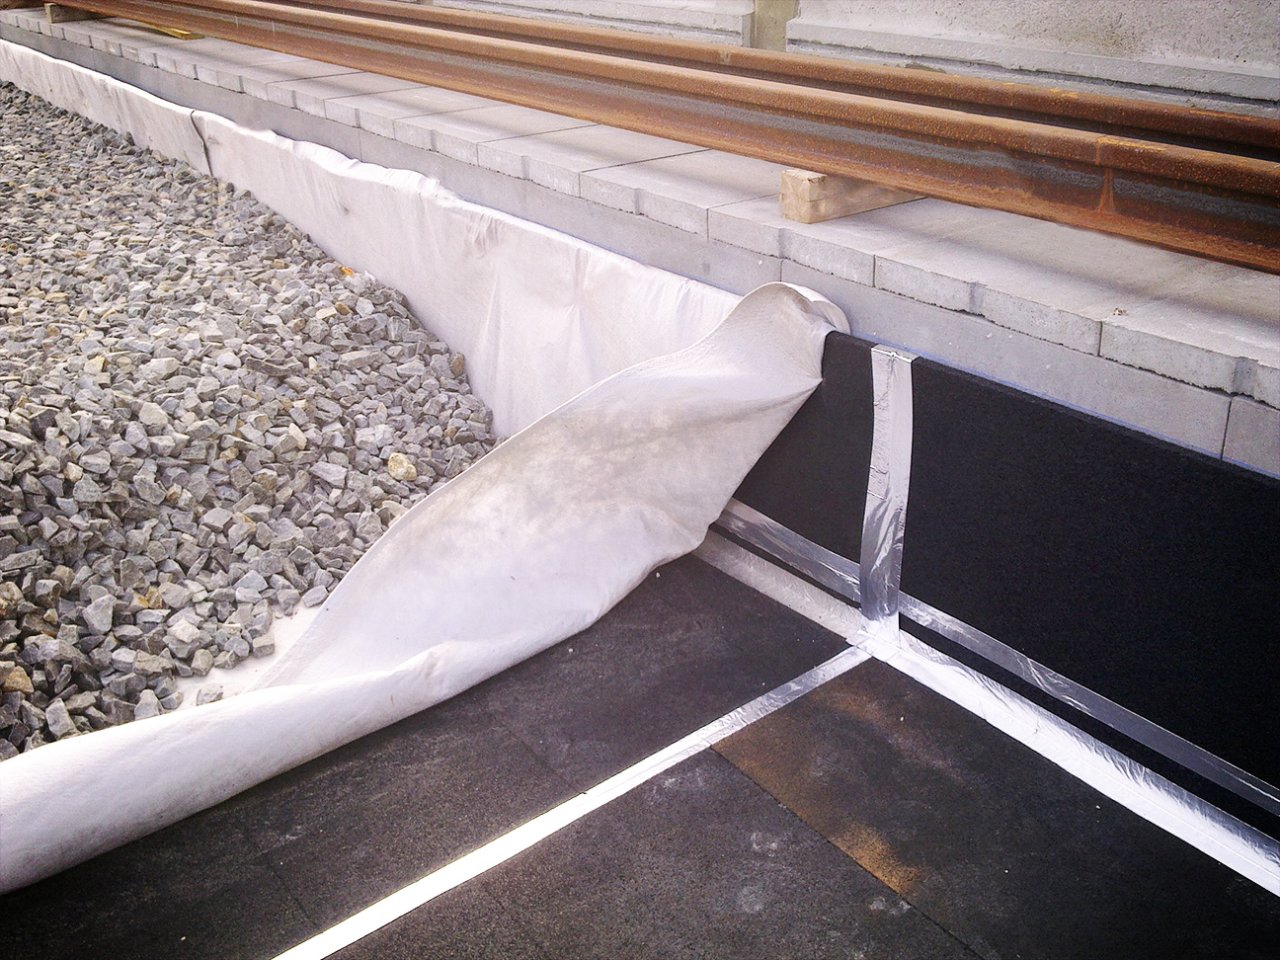 Pilt mMats valmistatud vibratsiooni summutavast materjalist, mis on paigaldatud ballasti alla uue rööbastee paigaldamisel rongidele.